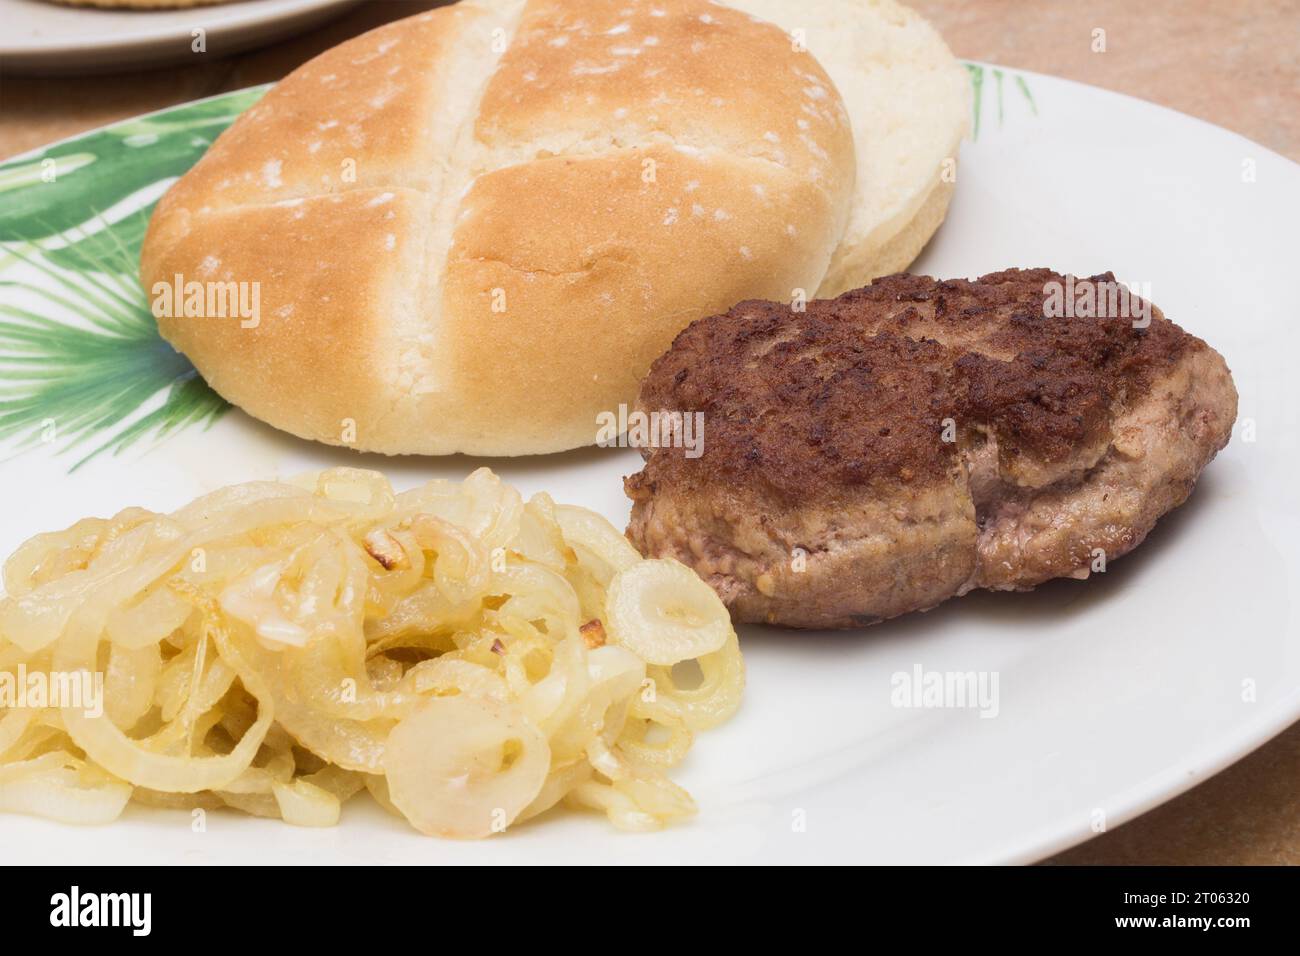 Eine köstliche Nahaufnahme mit geröstetem Hamburger-Patty, einem Burgerbrötchen und goldenen, durchscheinenden Zwiebeln auf einem weißen Teller. Burger-Moment. Stockfoto